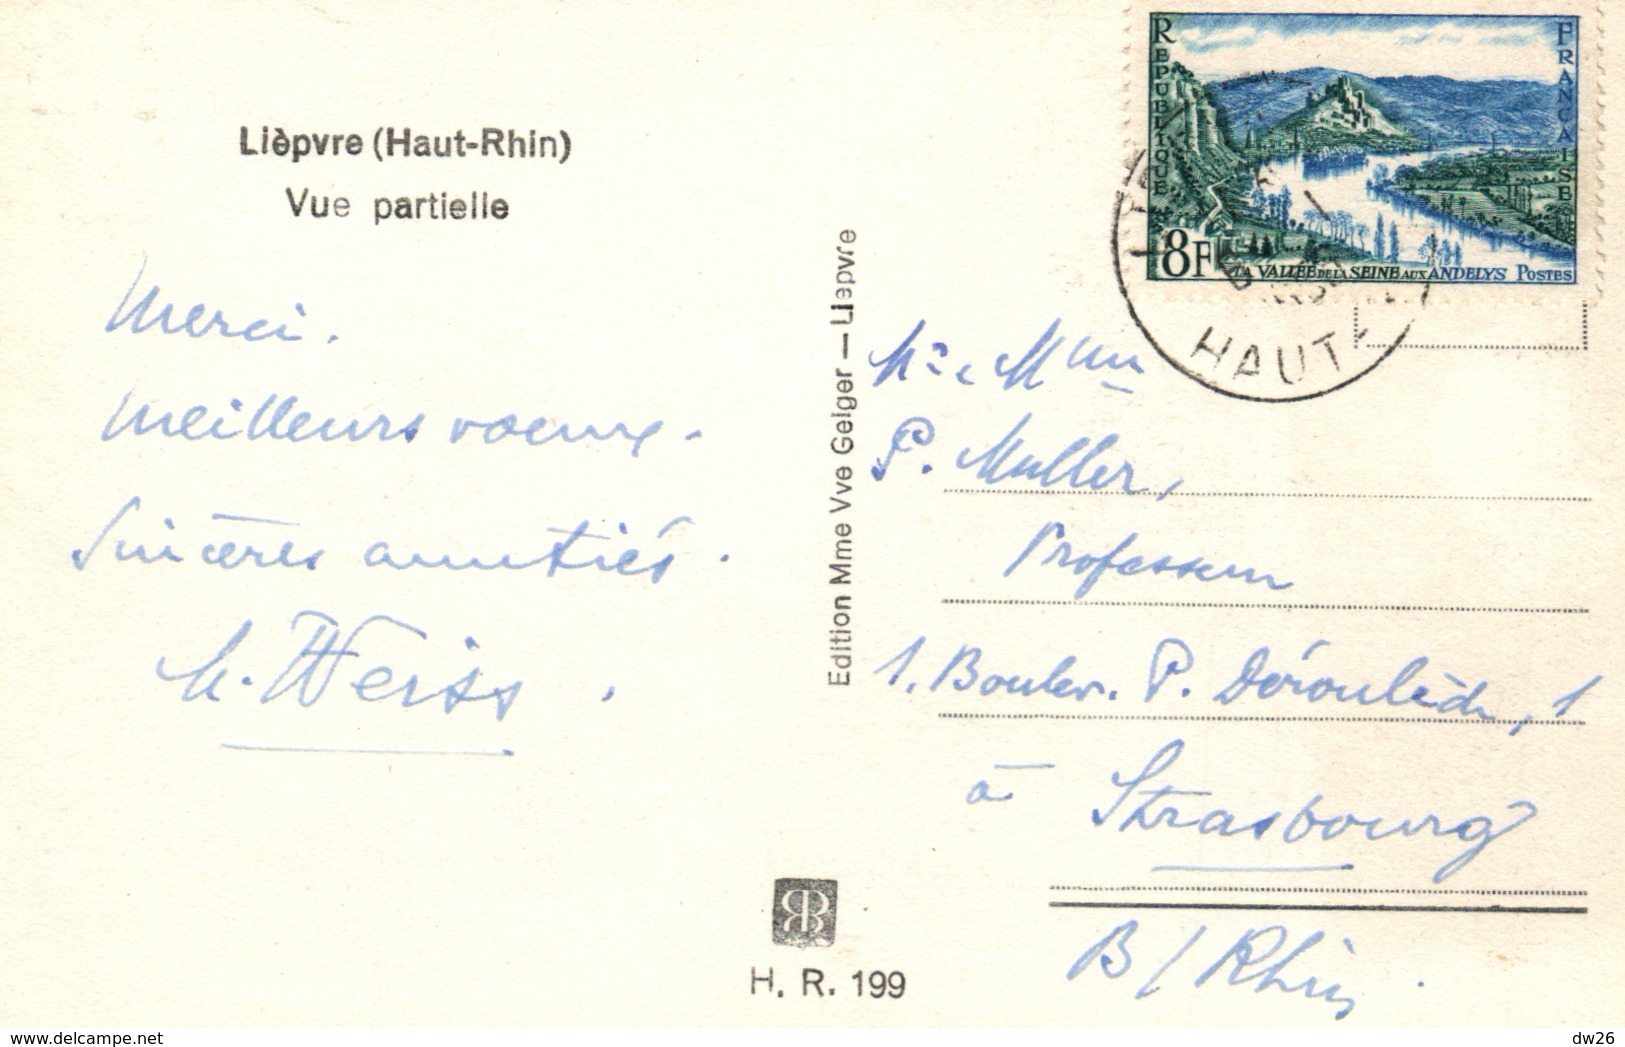 Lièpvre (Haut-Rhin) Vue Partielle 1954 - Edition Mme Vve Geiger - Lièpvre